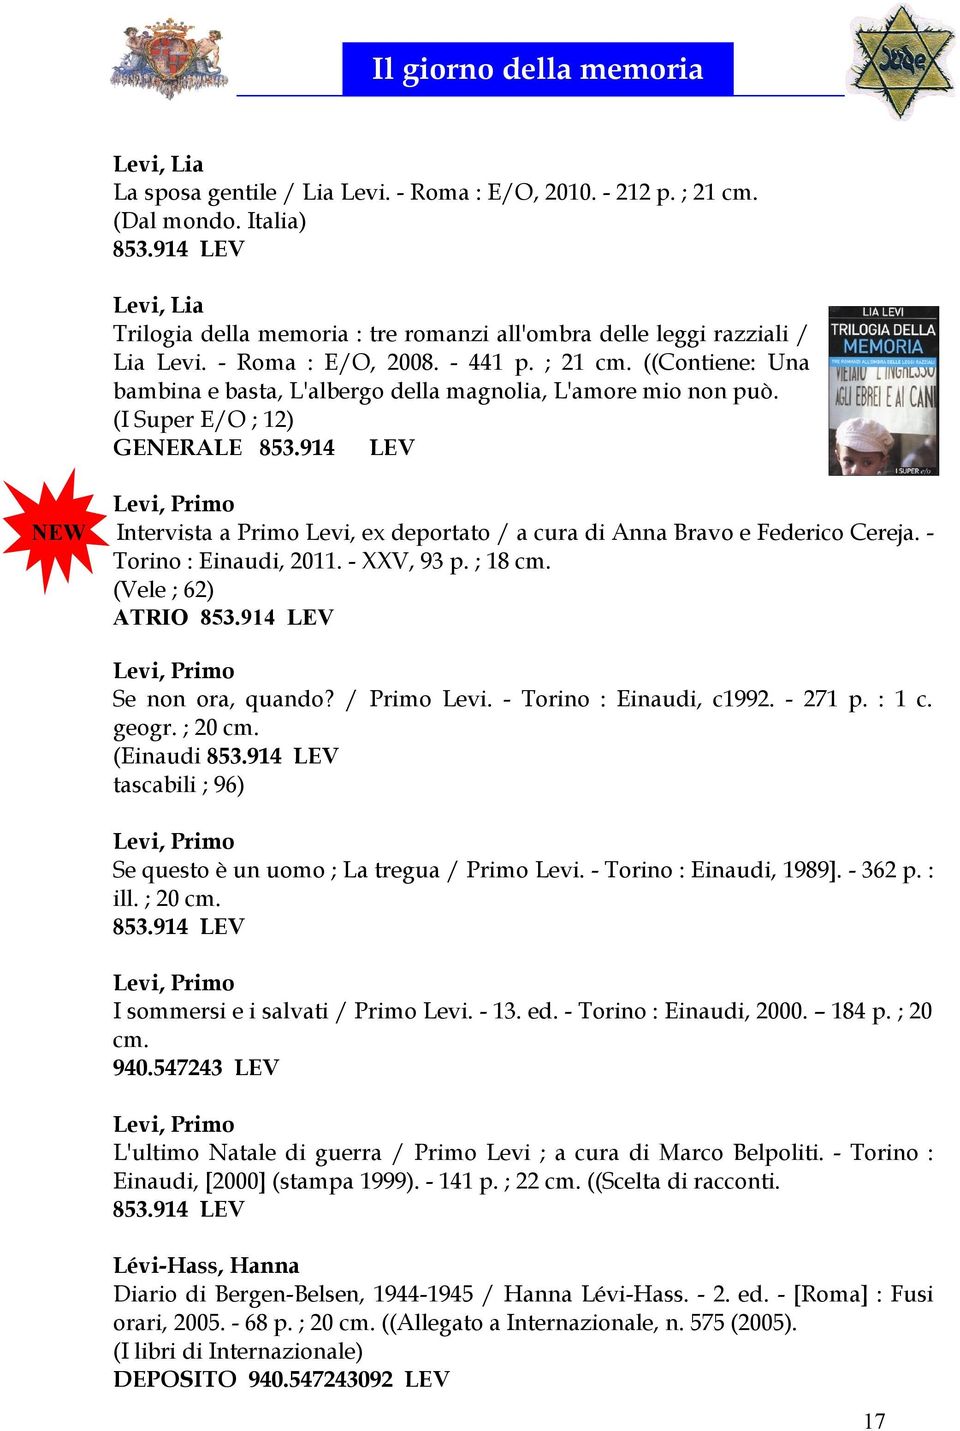 914 LEV Levi, Primo NEW Intervista a Primo Levi, ex deportato / a cura di Anna Bravo e Federico Cereja. - Torino : Einaudi, 2011. - XXV, 93 p. ; 18 cm. (Vele ; 62) ATRIO 853.